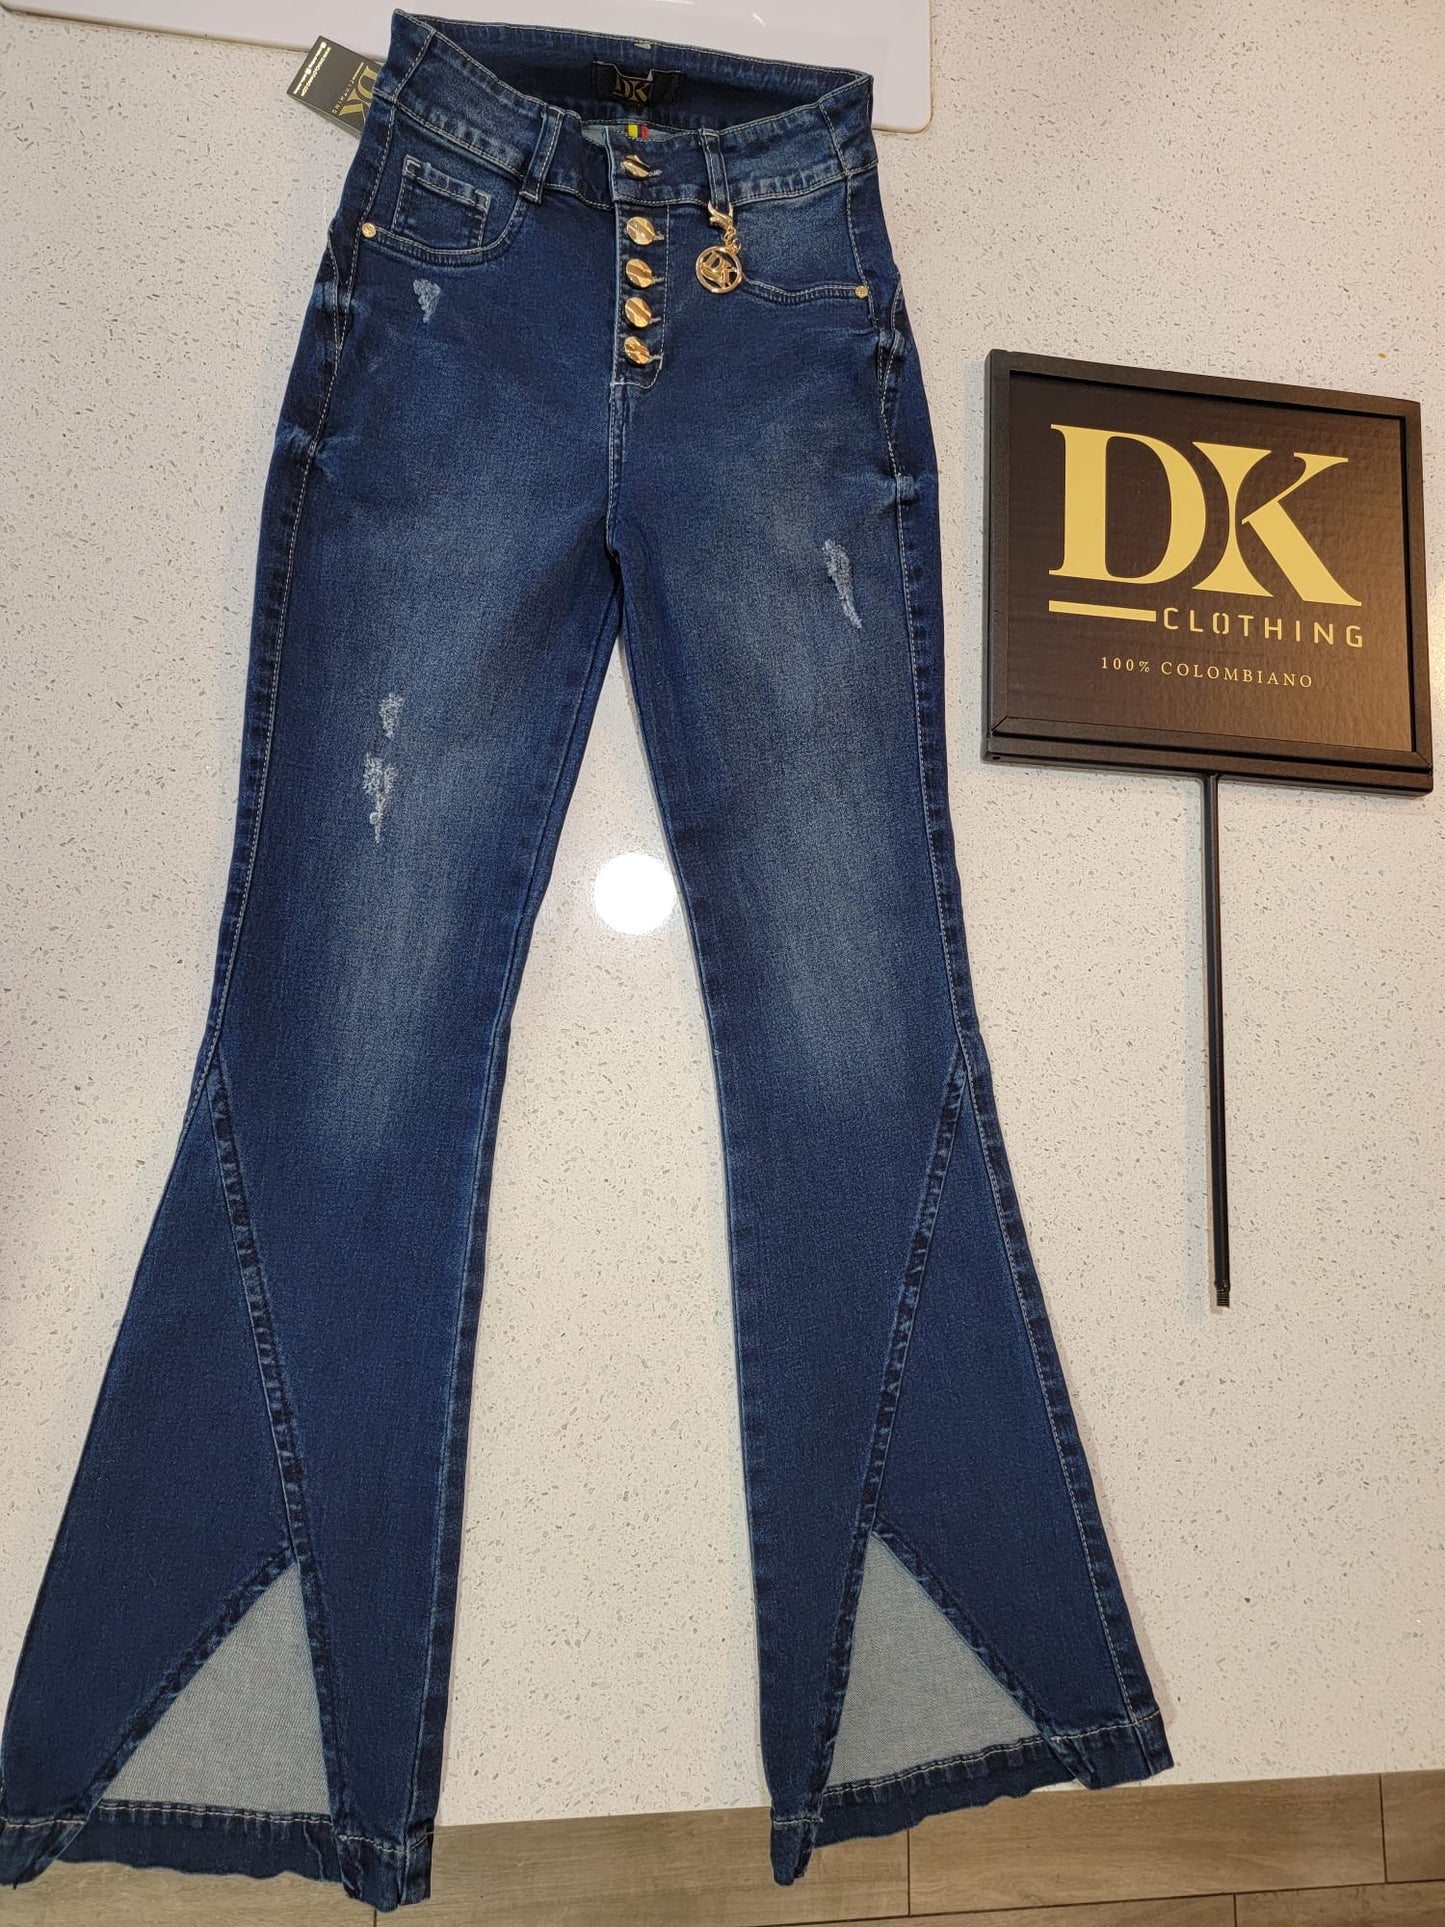 Ref: 97DK Colombian jeans